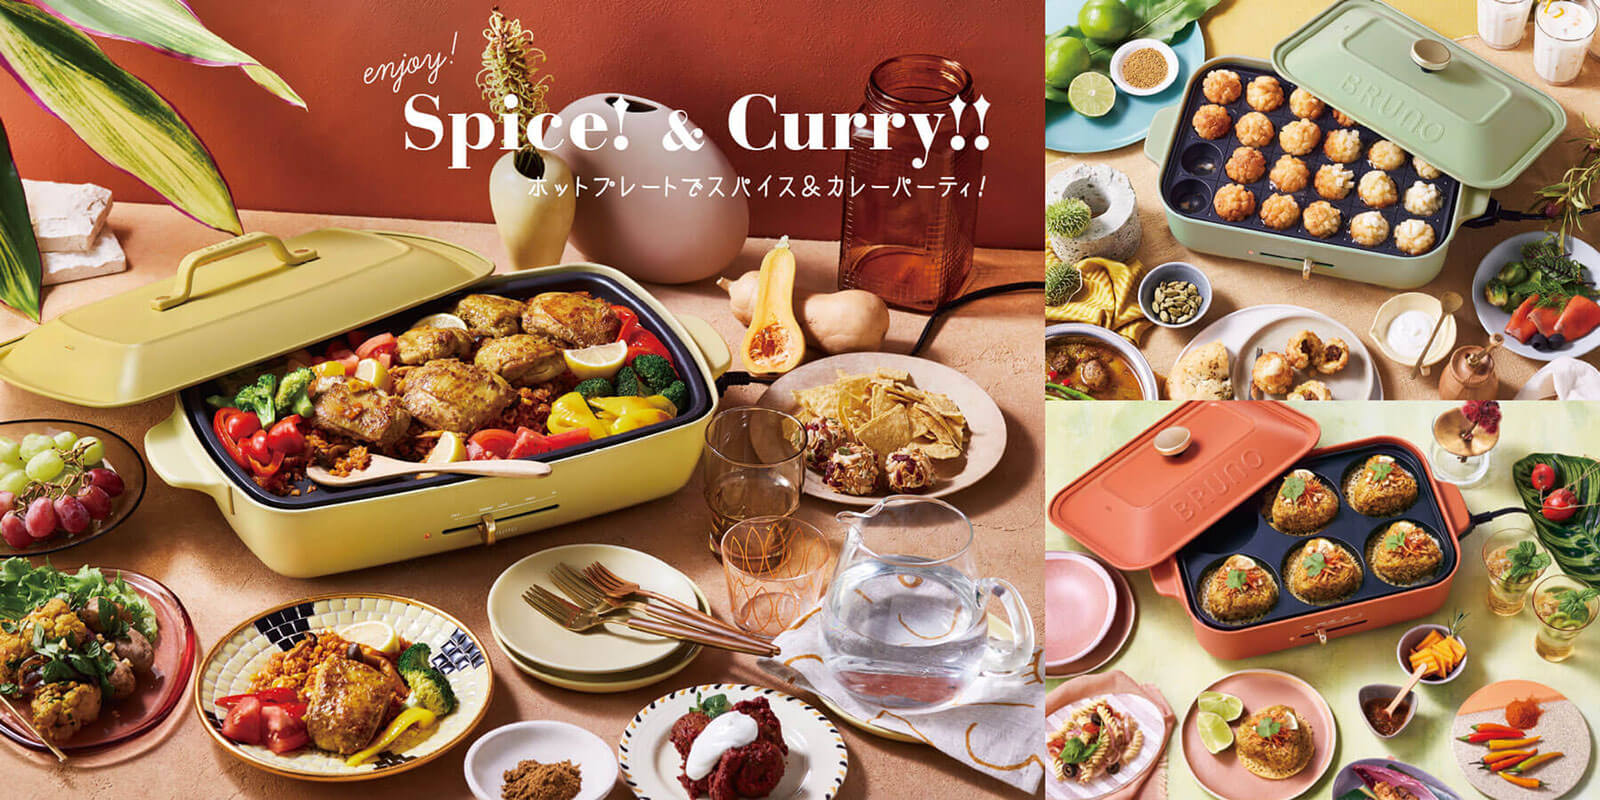 BRUNO ホットプレート22SS限定カラー Enjoy!Spice&Curry!!